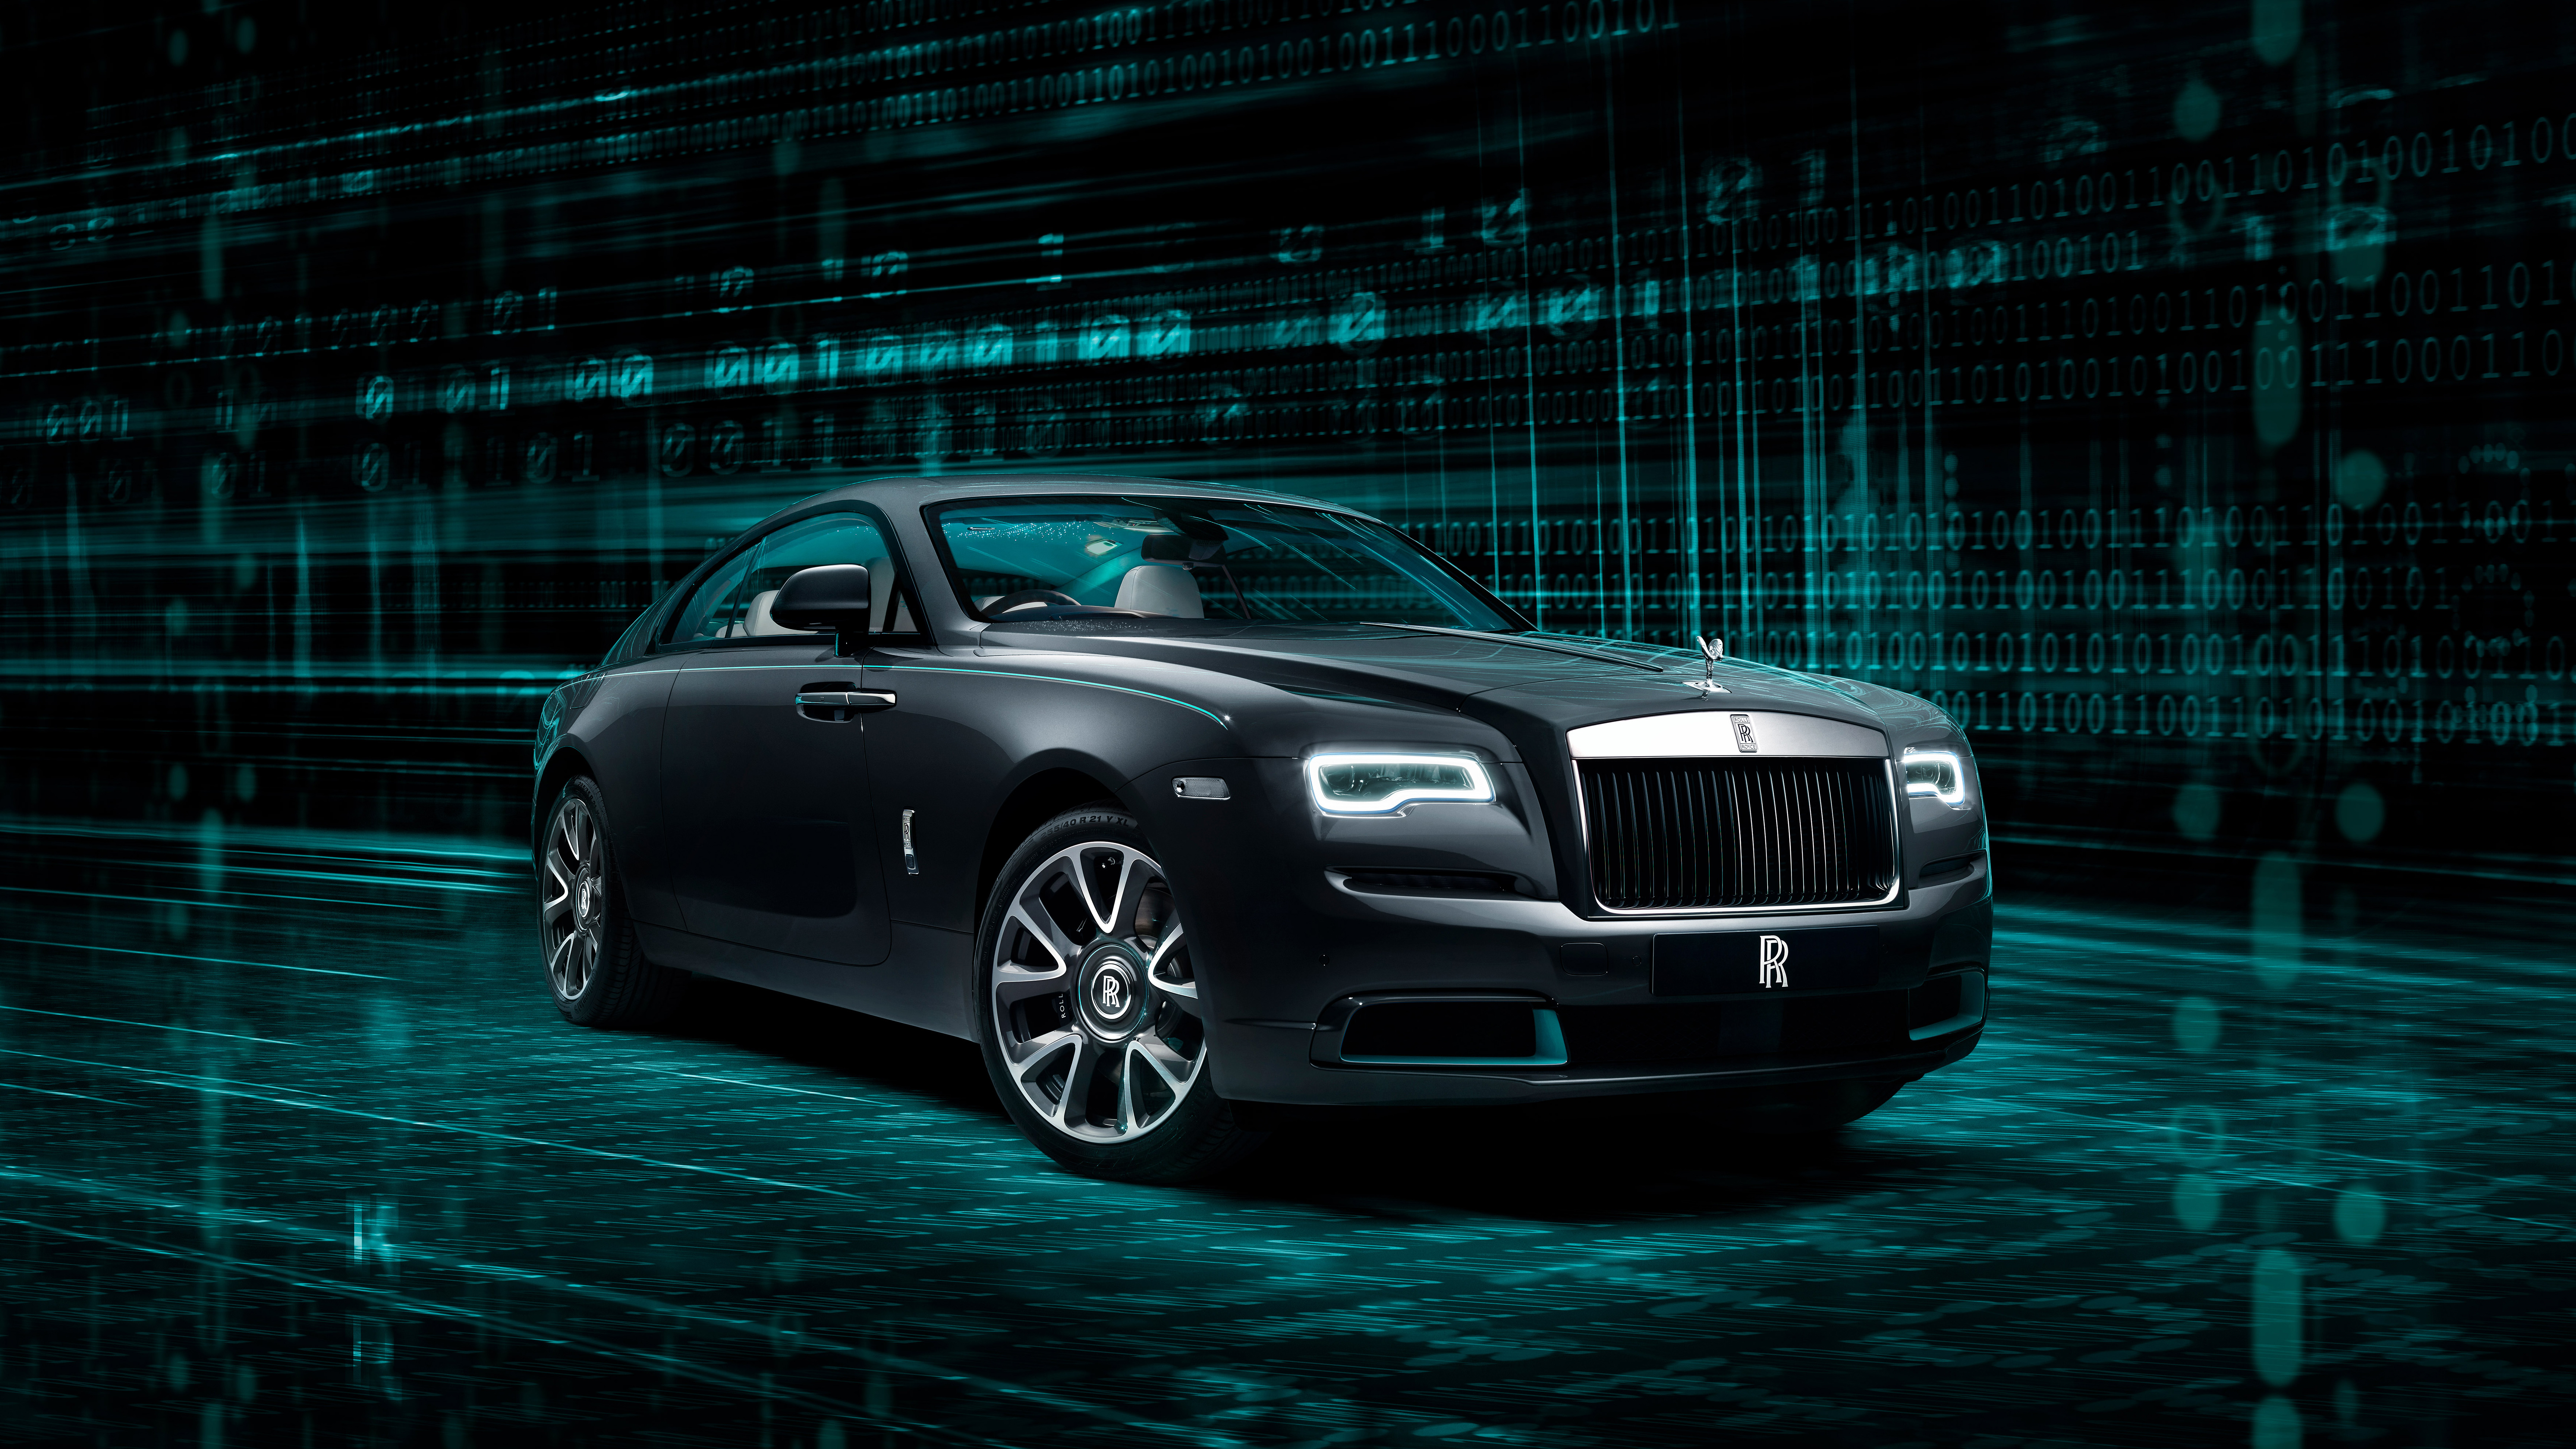 Descarga gratuita de fondo de pantalla para móvil de Rolls Royce, Coche, Rolls Royce Fantasma, Vehículos.